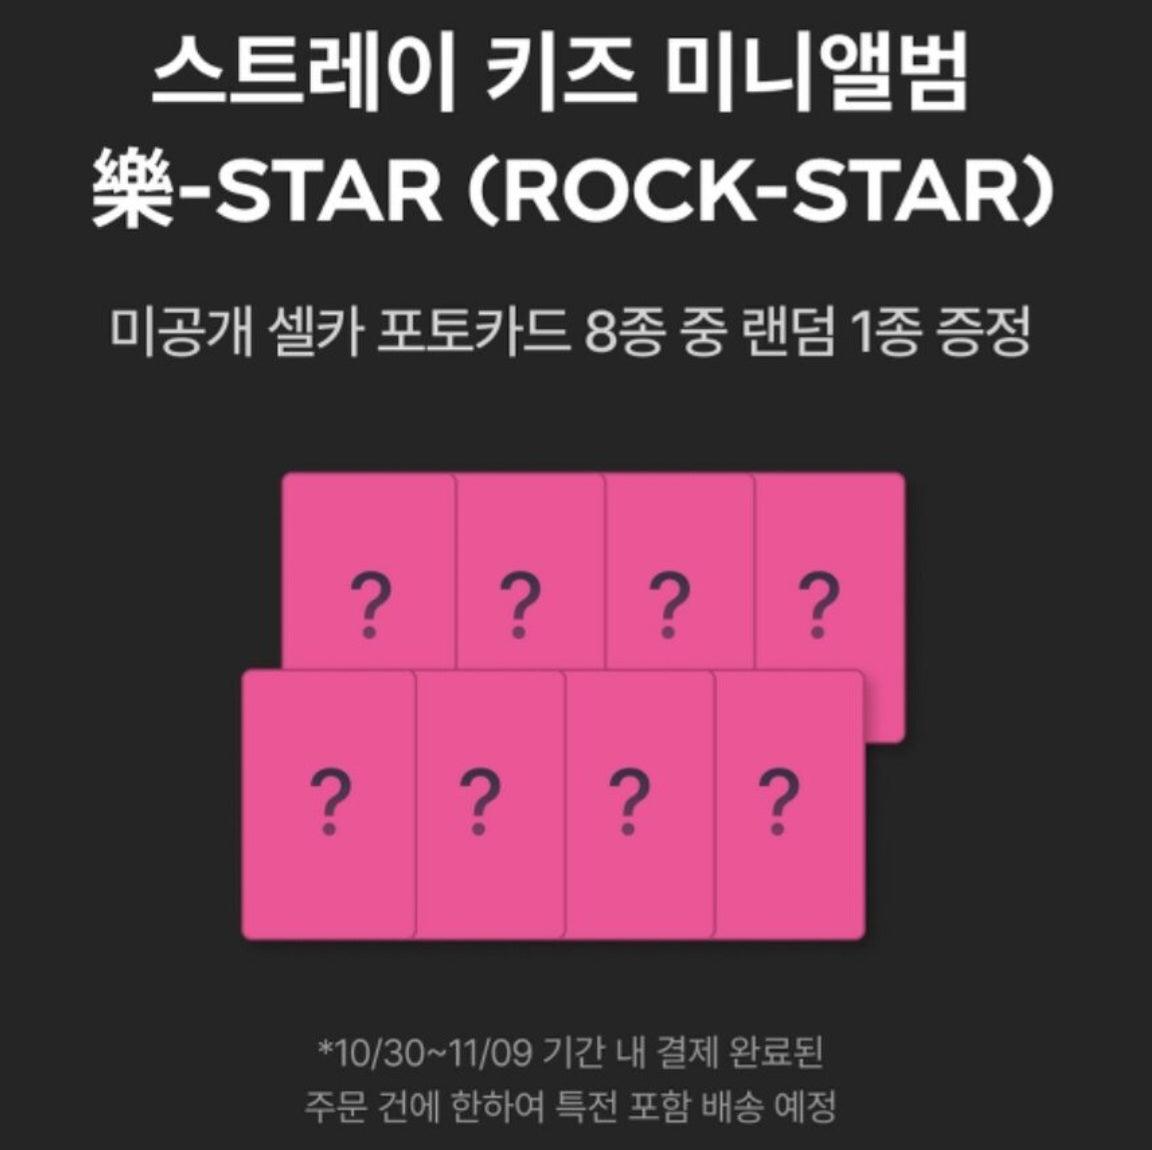 Stray Kids 樂-STAR KakaoTalk Pre Order Benefit - KKANG